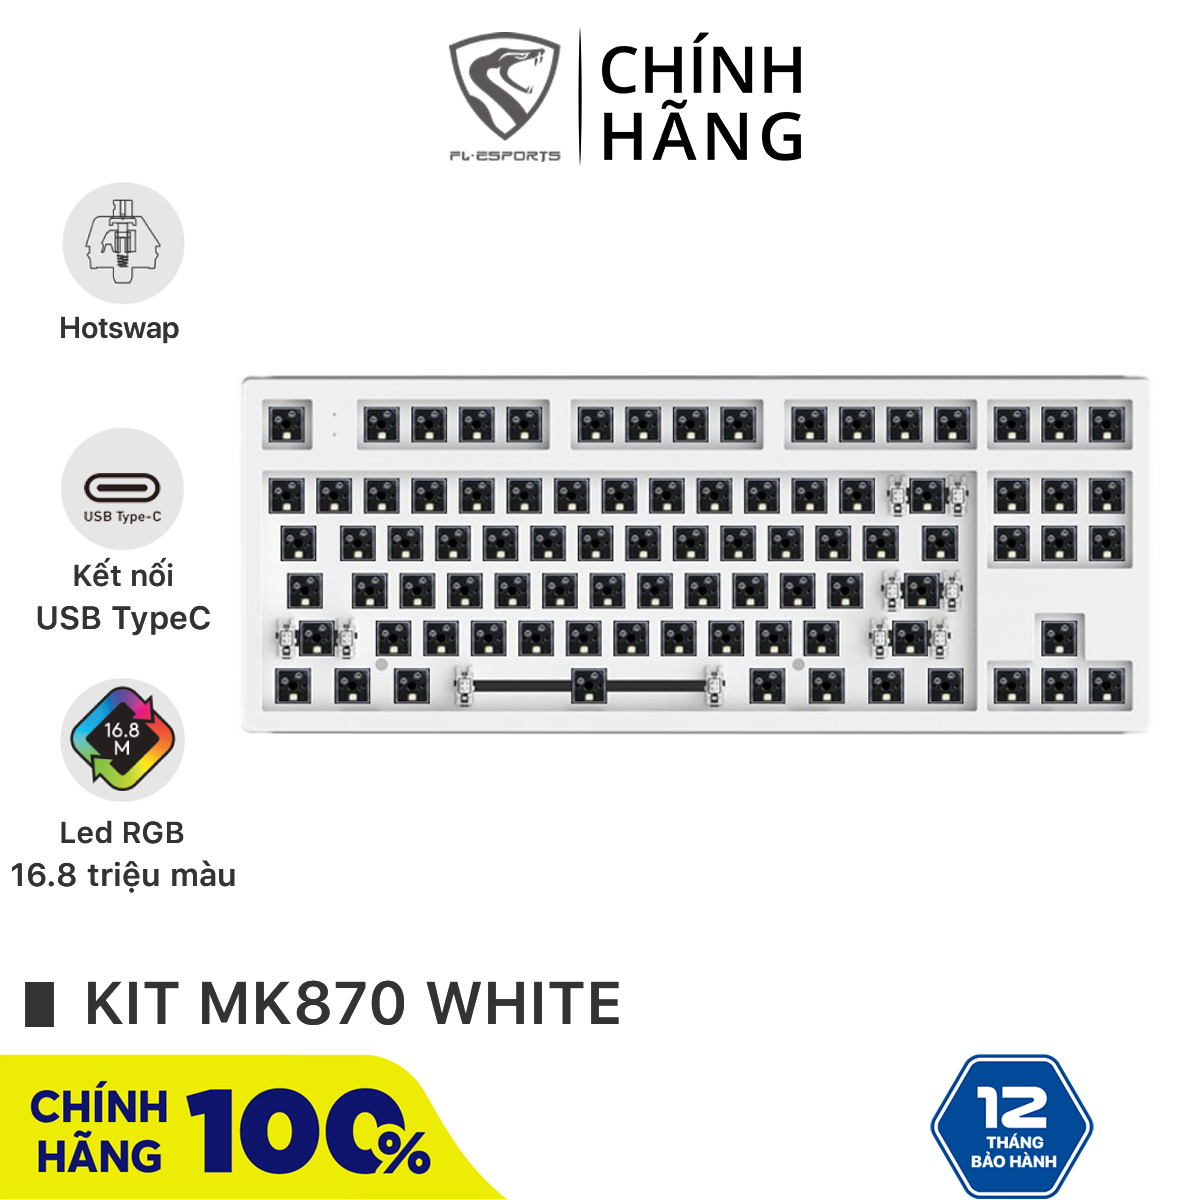 Bộ kit bàn phím cơ FL-Esports MK870 1 Mode White - Hotswap - Led RGB - Sẵn foam - Bảo hành 12 tháng thumbnail